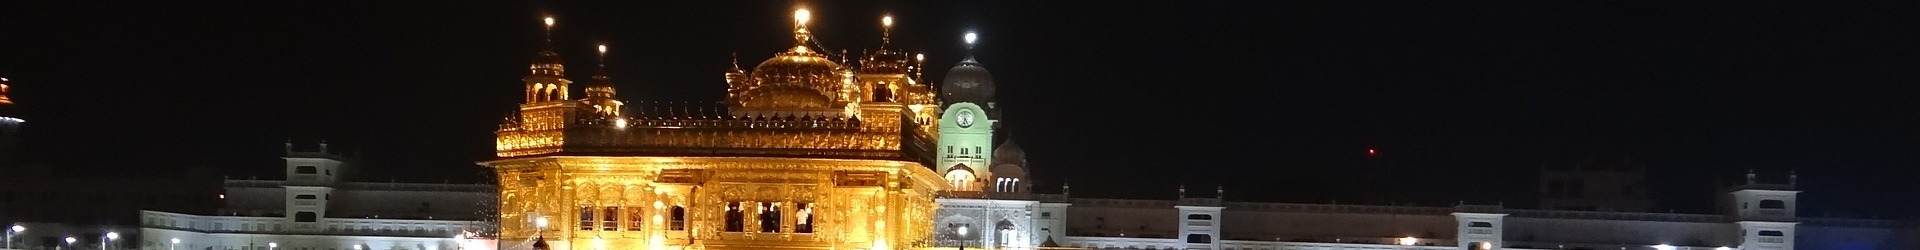 Sikh Festivals